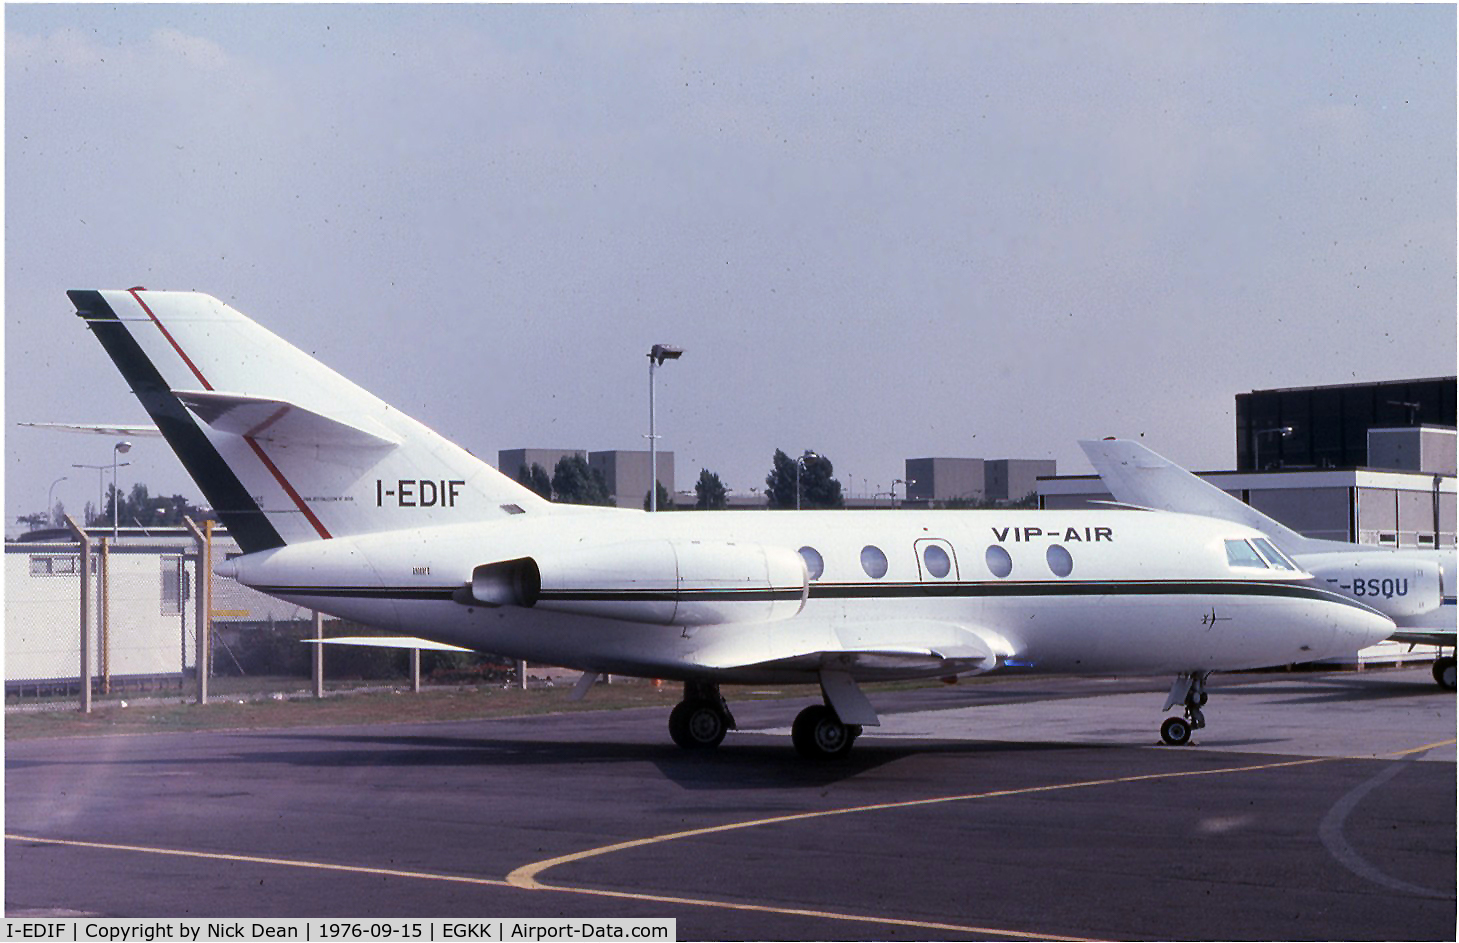 I-EDIF, 1974 Dassault Falcon (Mystere) 20E C/N 300, EGKK